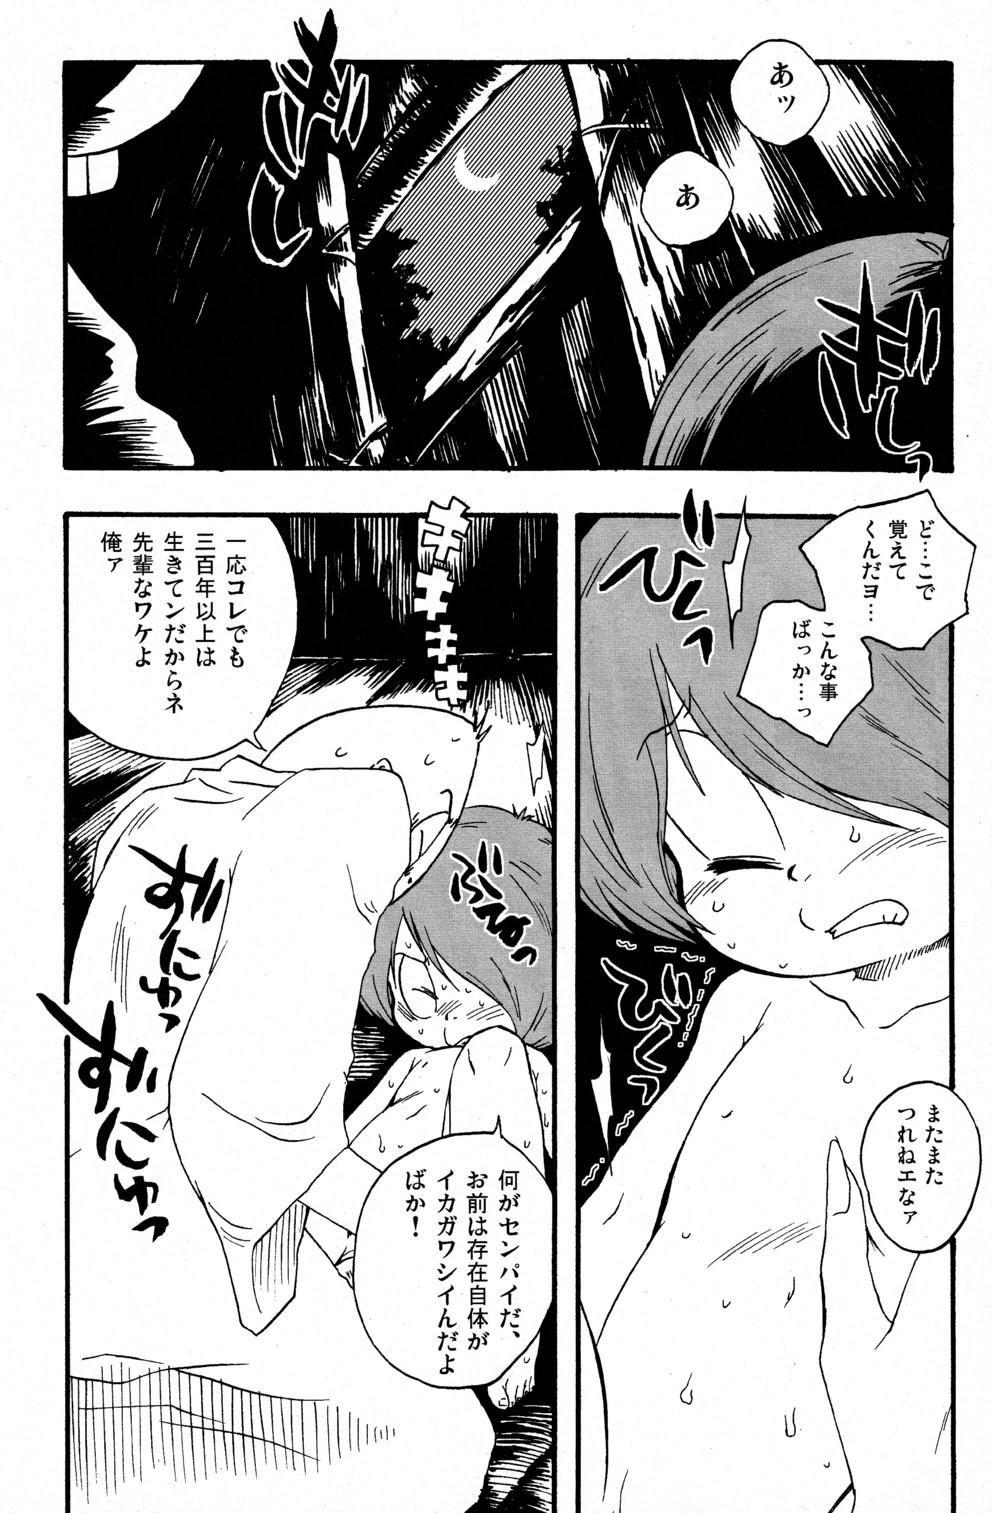 Pornstars Kawaisa Amatte Nantoka Hyakubai - Gegege no kitarou Monster - Page 5